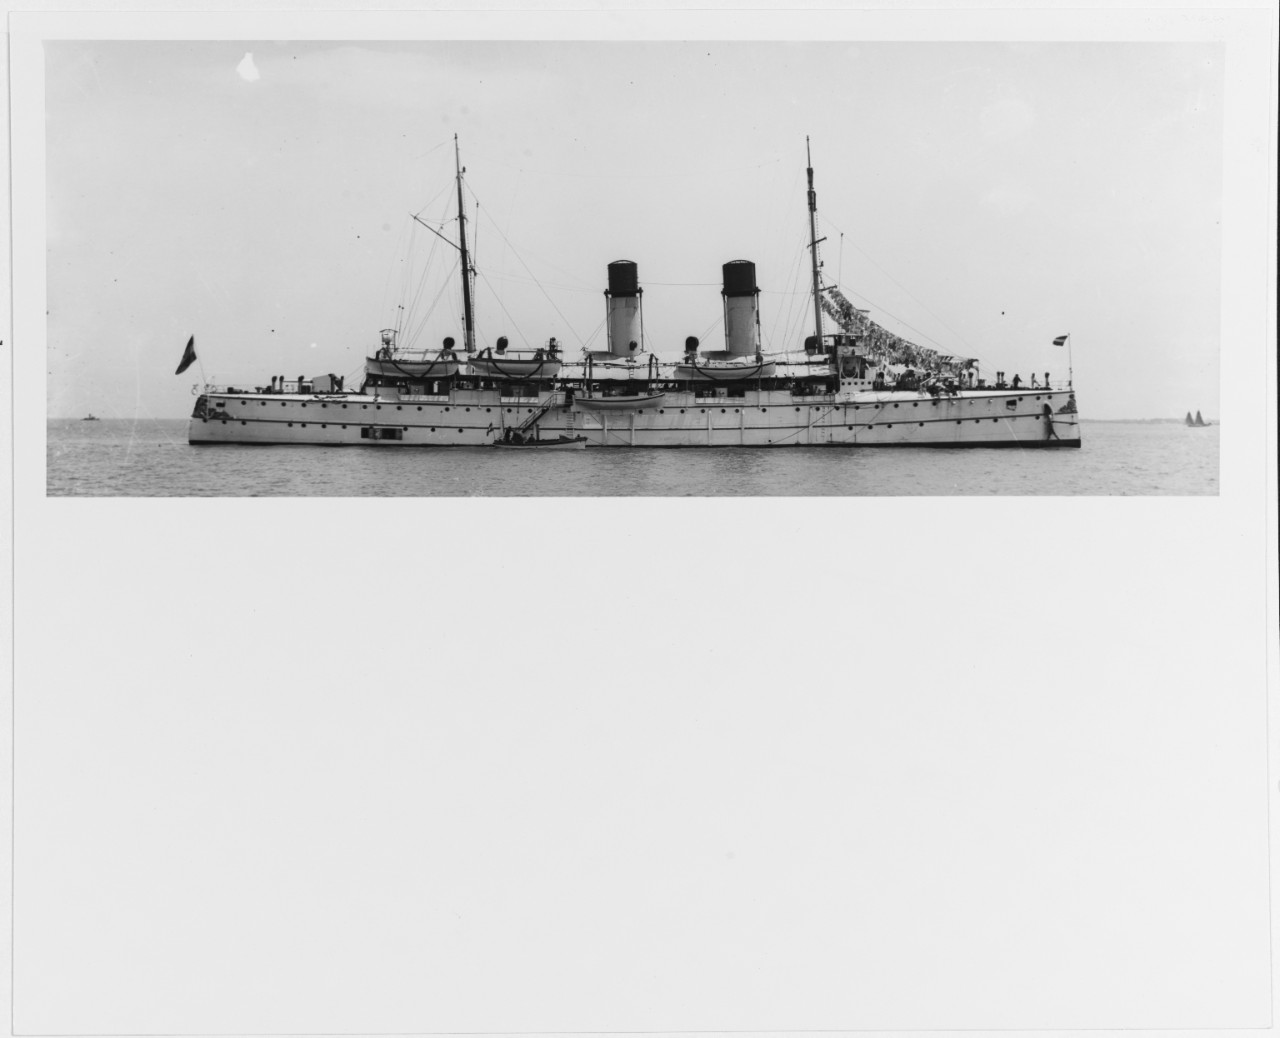 GELDERLAND (Dutch cruiser, 1898)